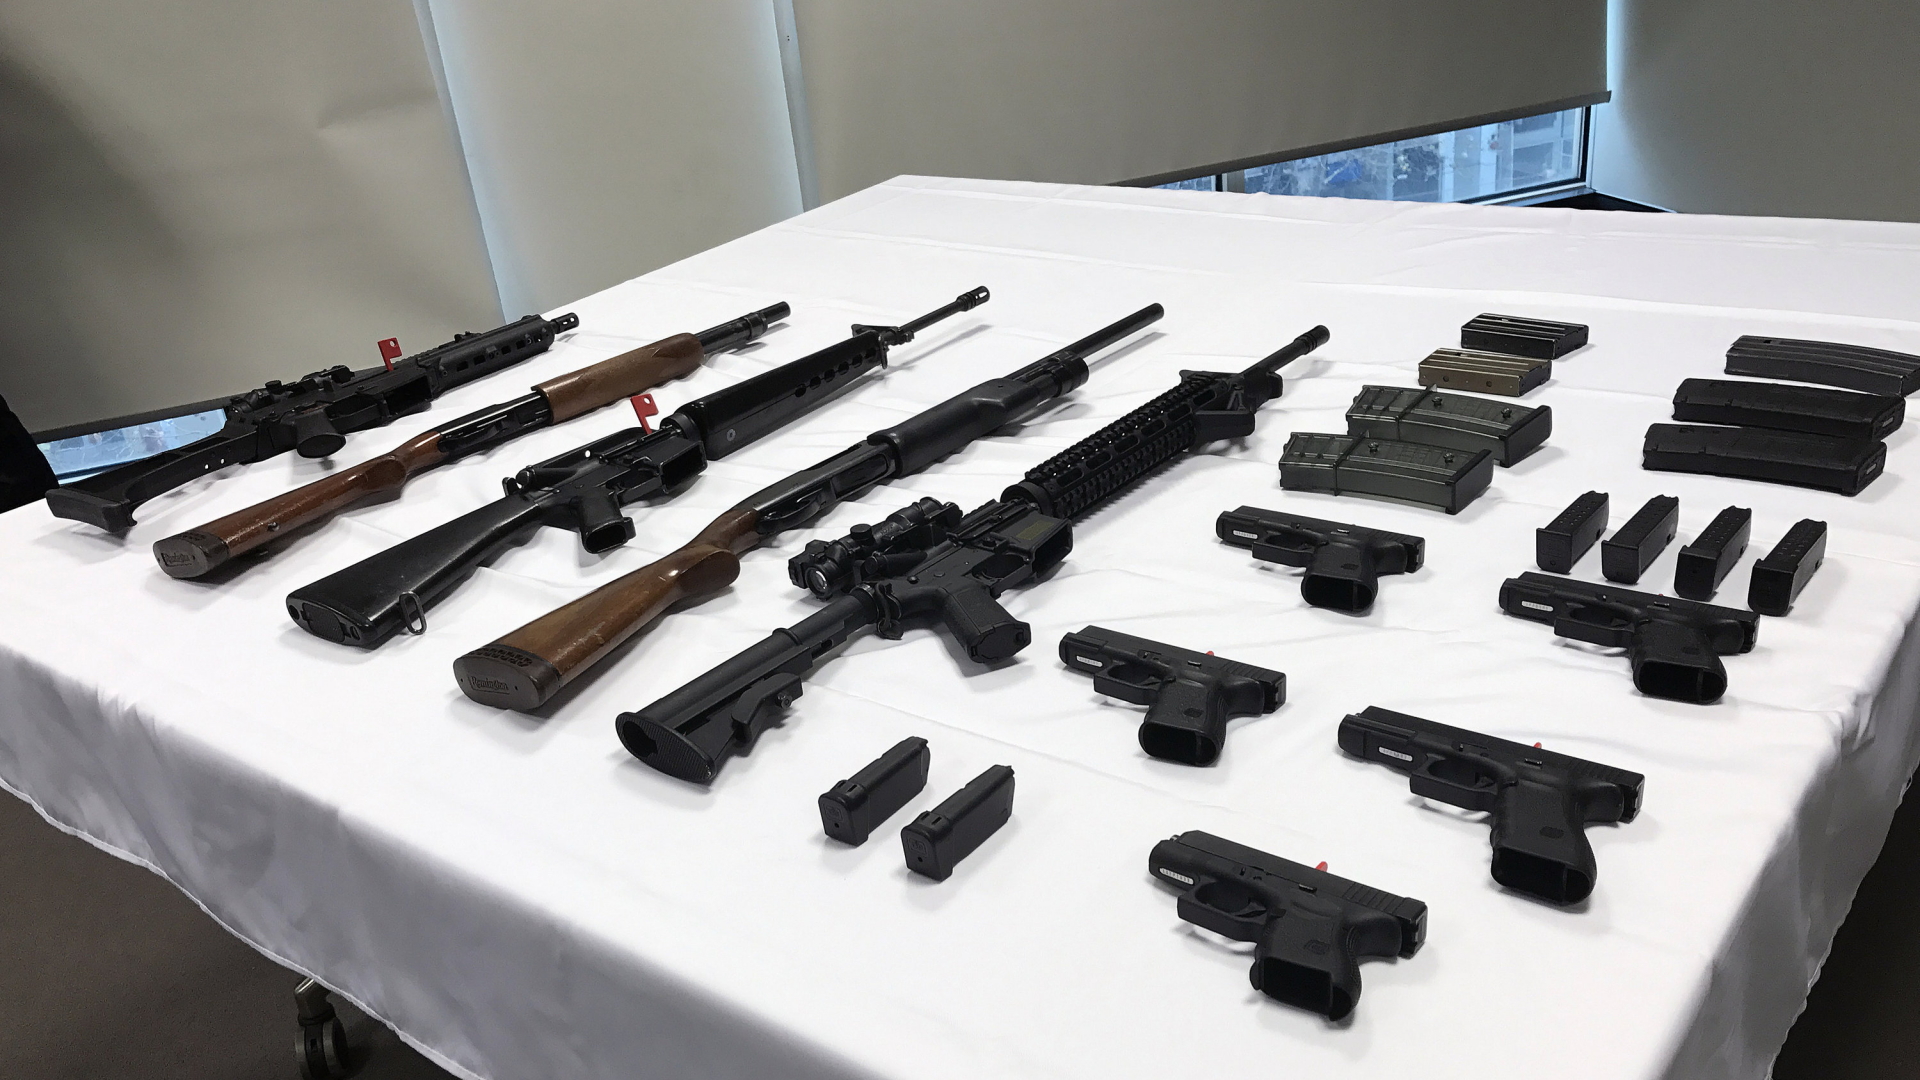 Verschiedene Gehwehre und Pistolen liegen am 16.06.2017 in Canberra (Australien) auf einem Tisch. | Bildquelle: dpa